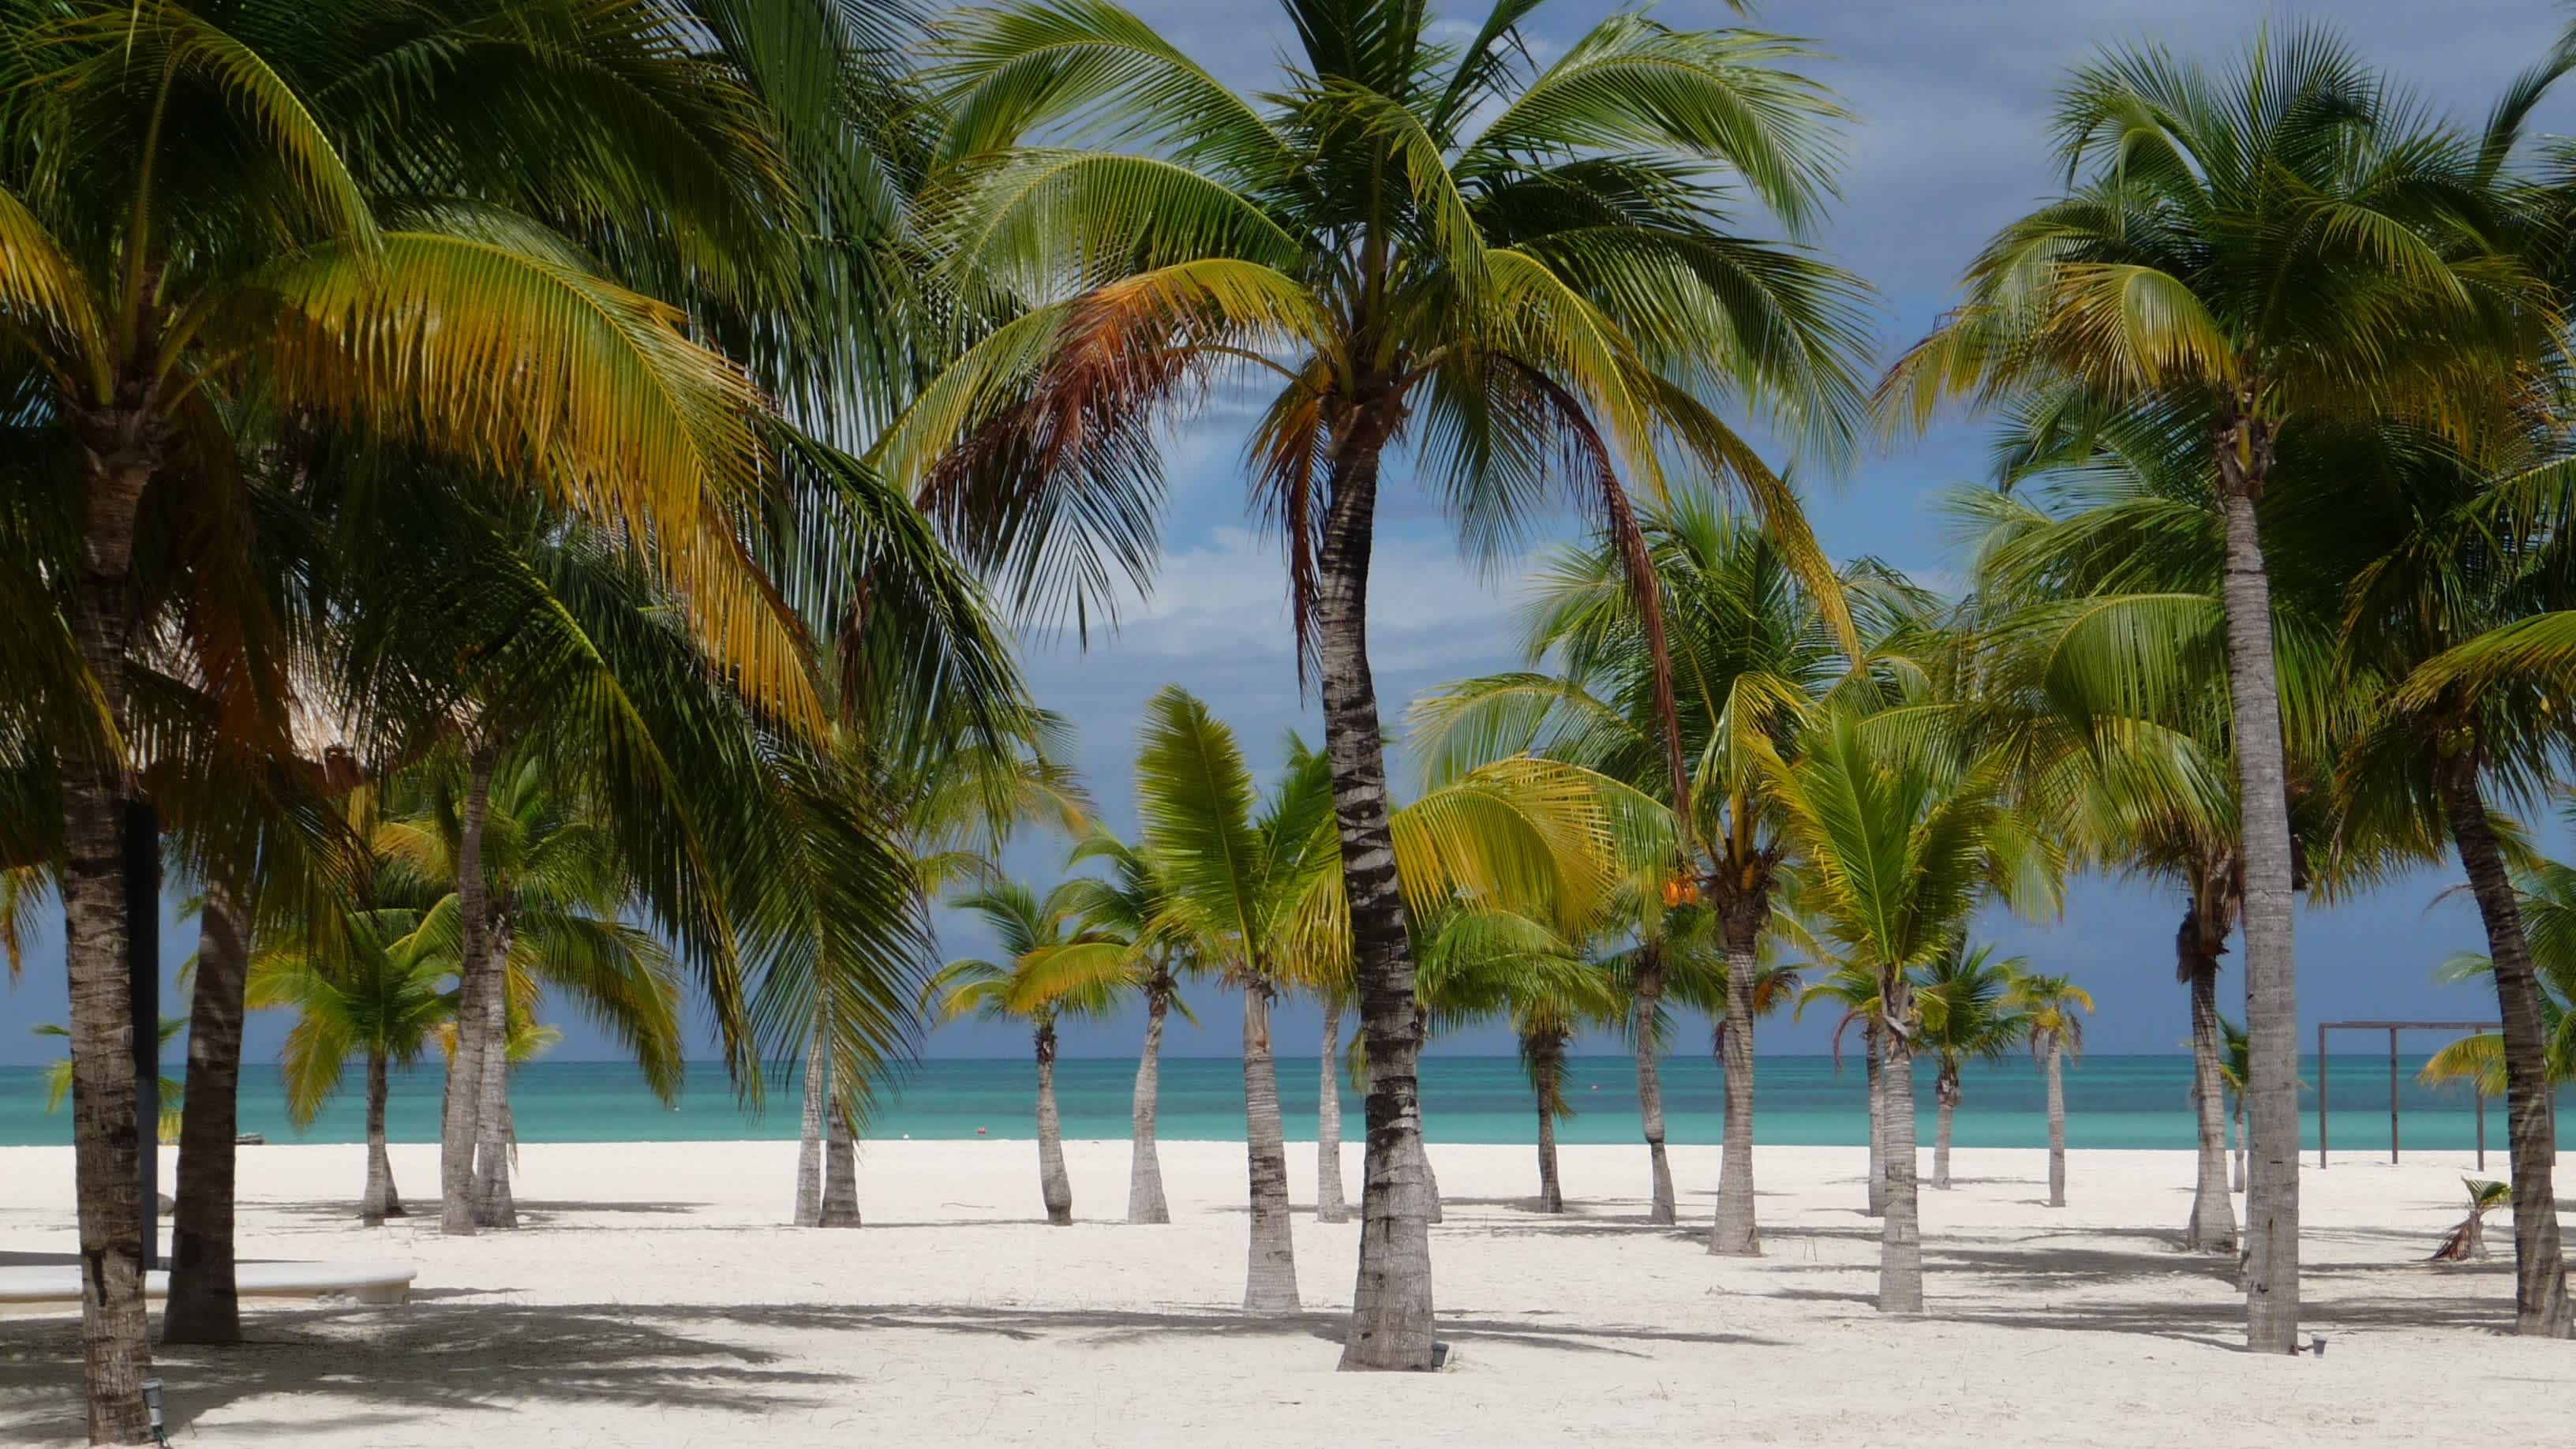 Die Insel der Leidenschaft in der Nähe von Cozumel/Mexiko bei Sonnenschein und mit Blick auf das Meer sowie Palmen.